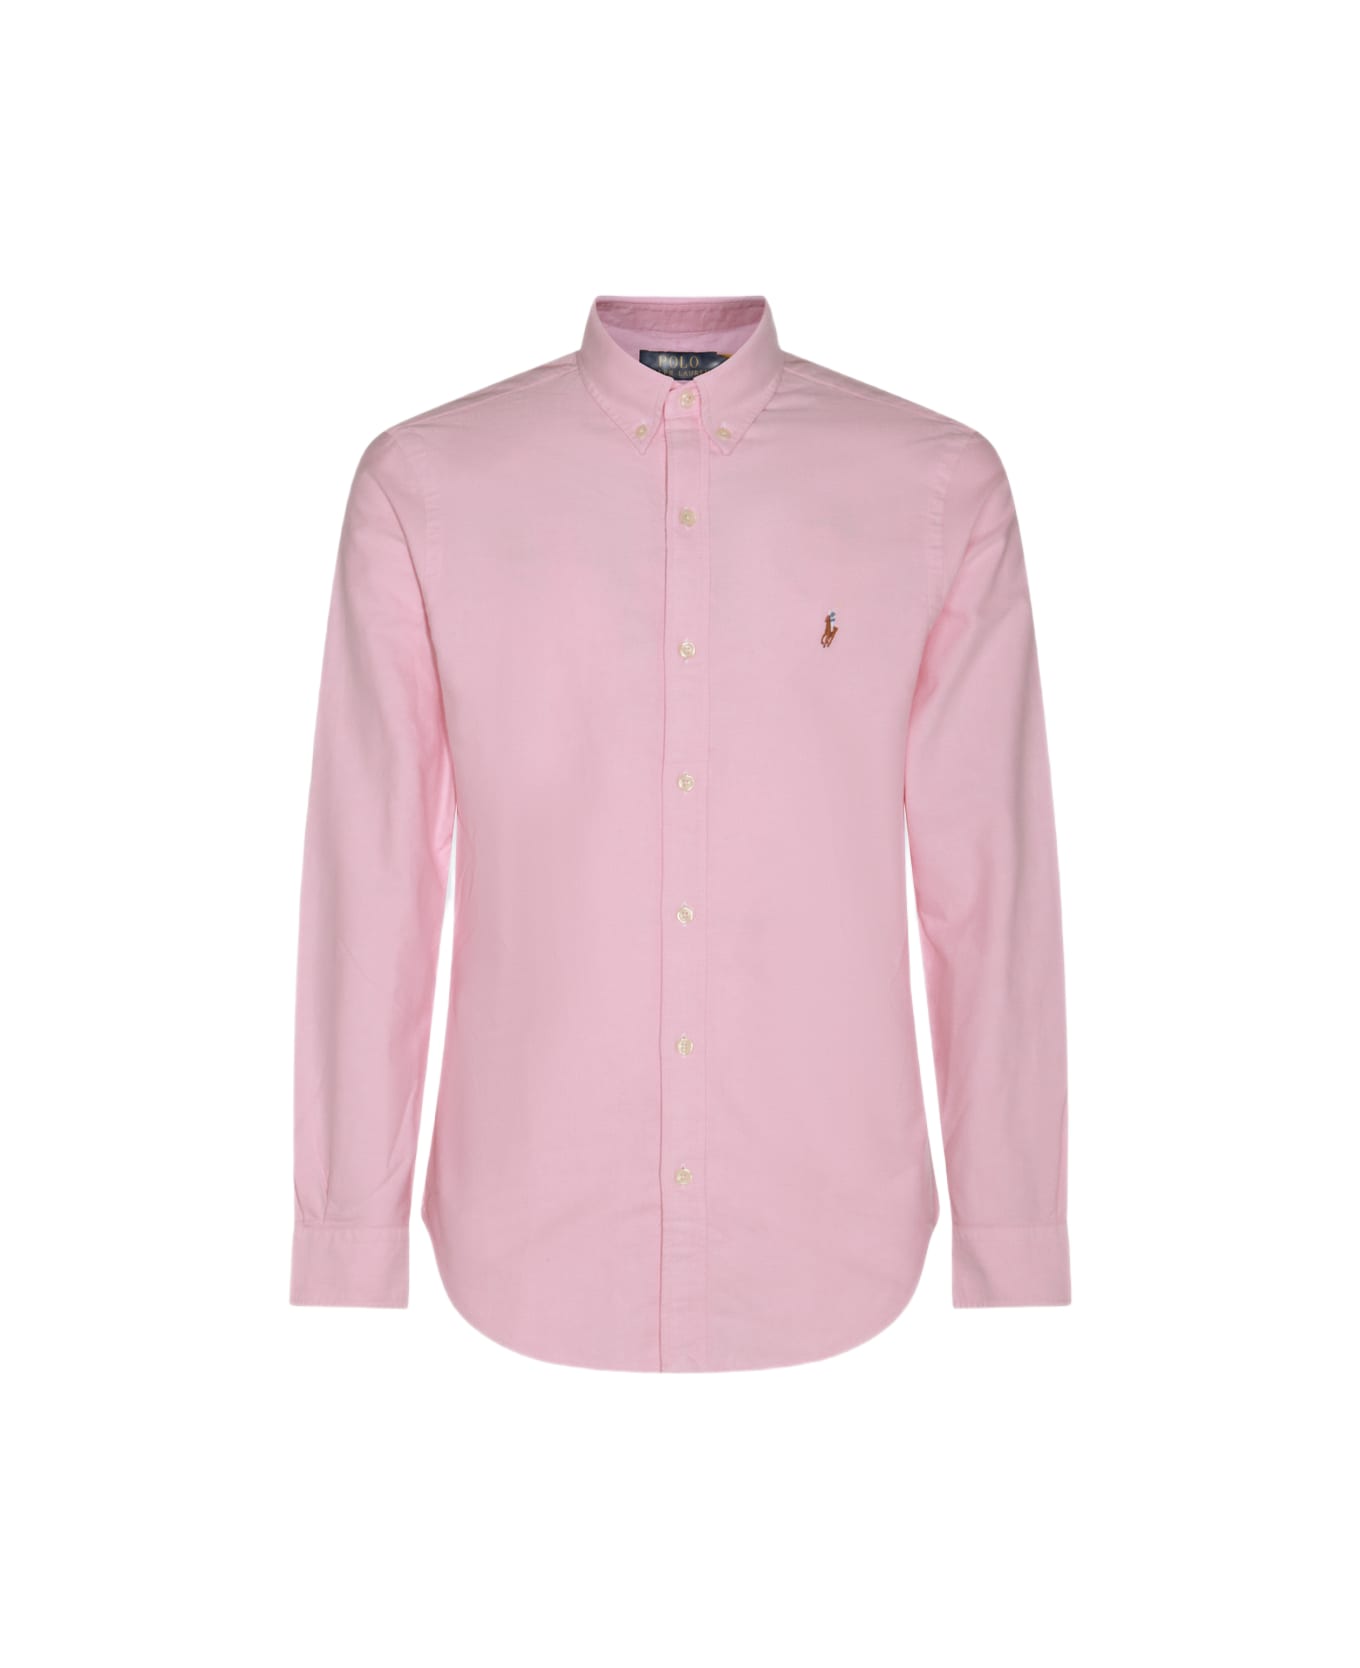 Polo Ralph Lauren Pink Cotton Shirt - BSR PINK